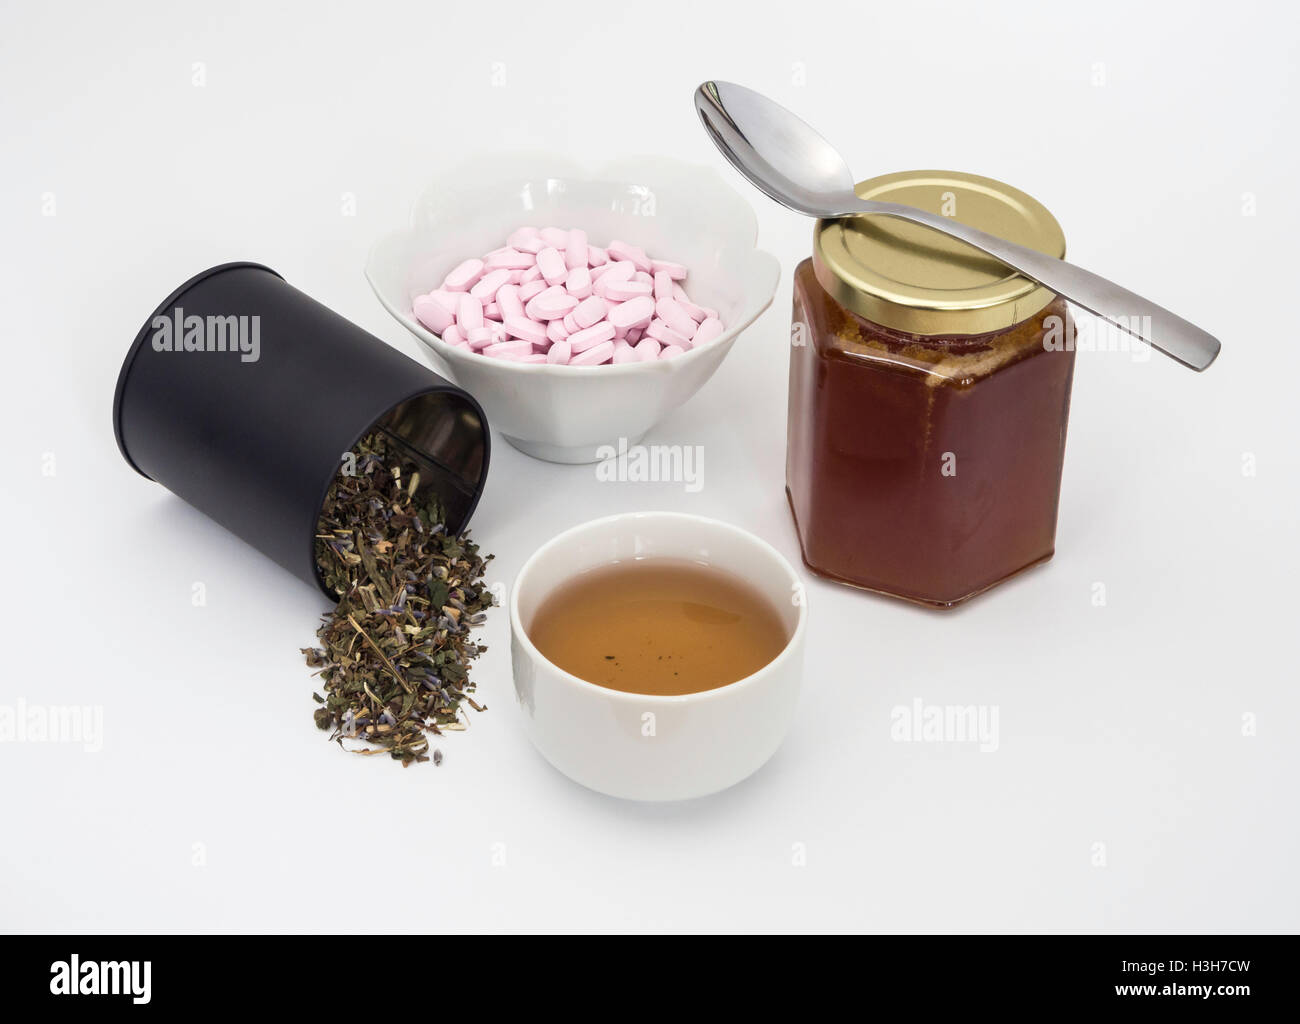 Hierba verde tulse con taza de té, tabletas de vitamina B12 y el tarro de miel de castaño, un combinado de remedio para el resfriado y la gripe de temporada. Foto de stock